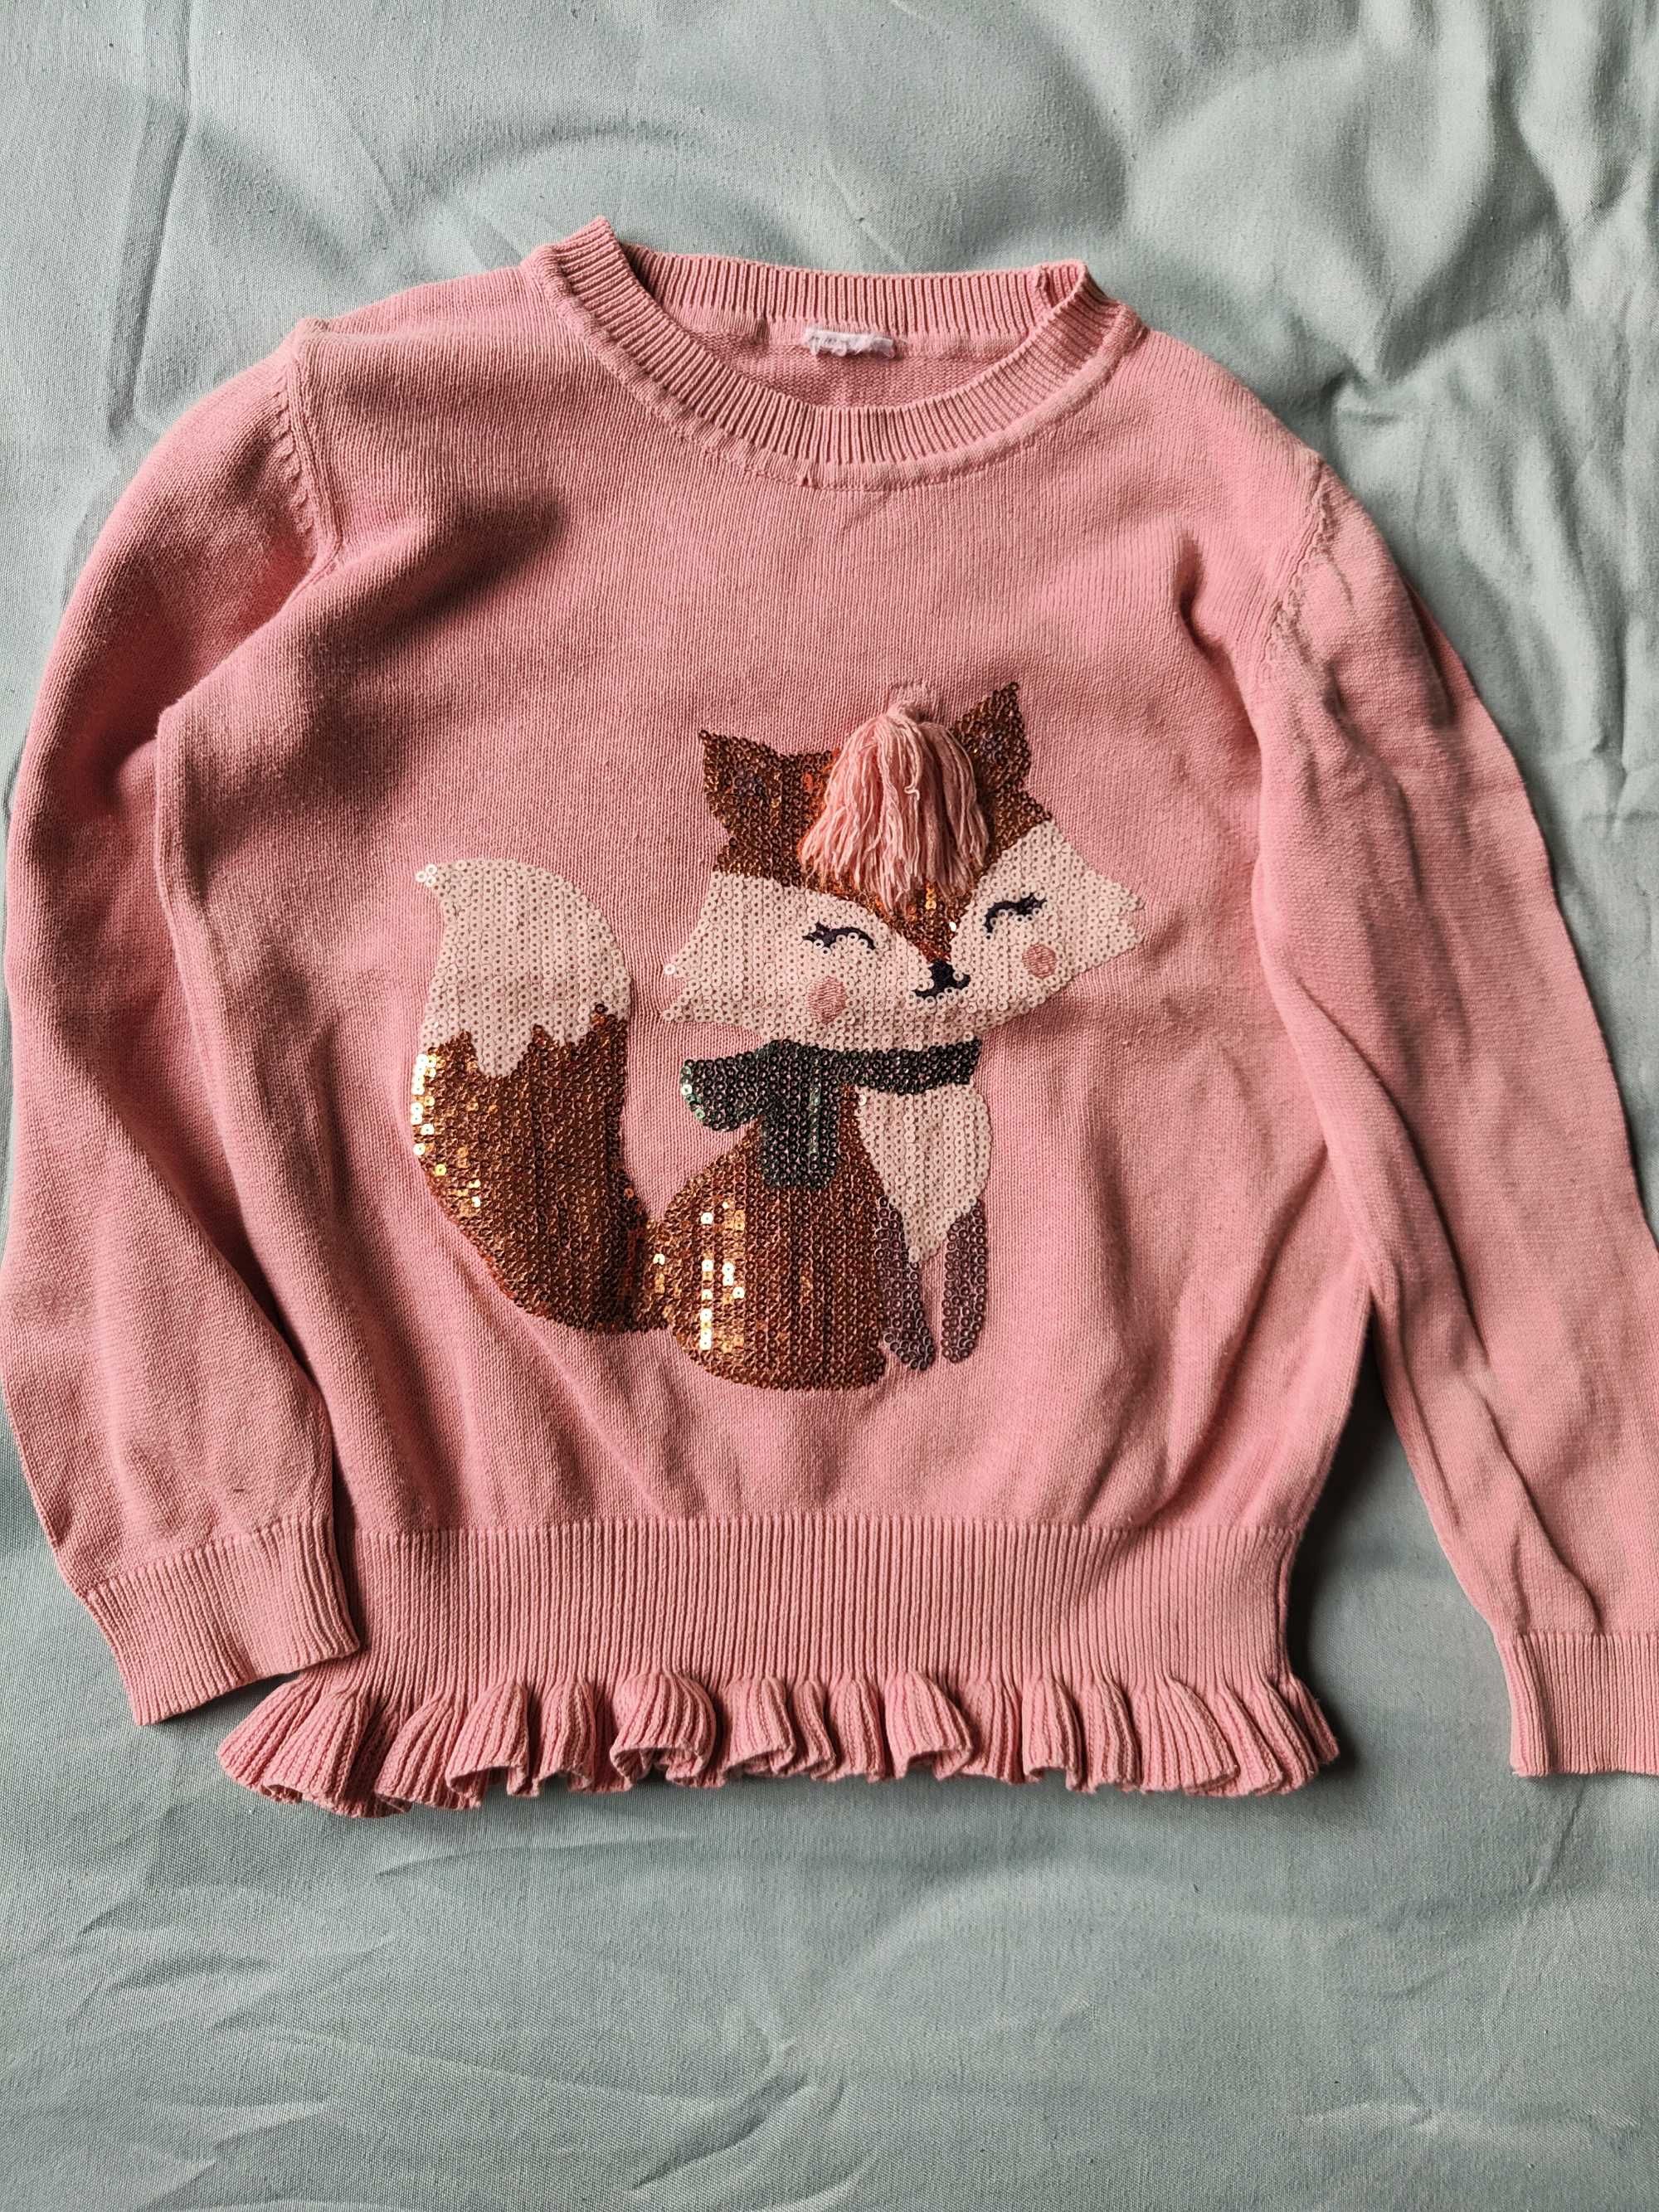 Śliczny sweterek dla dziewczynki